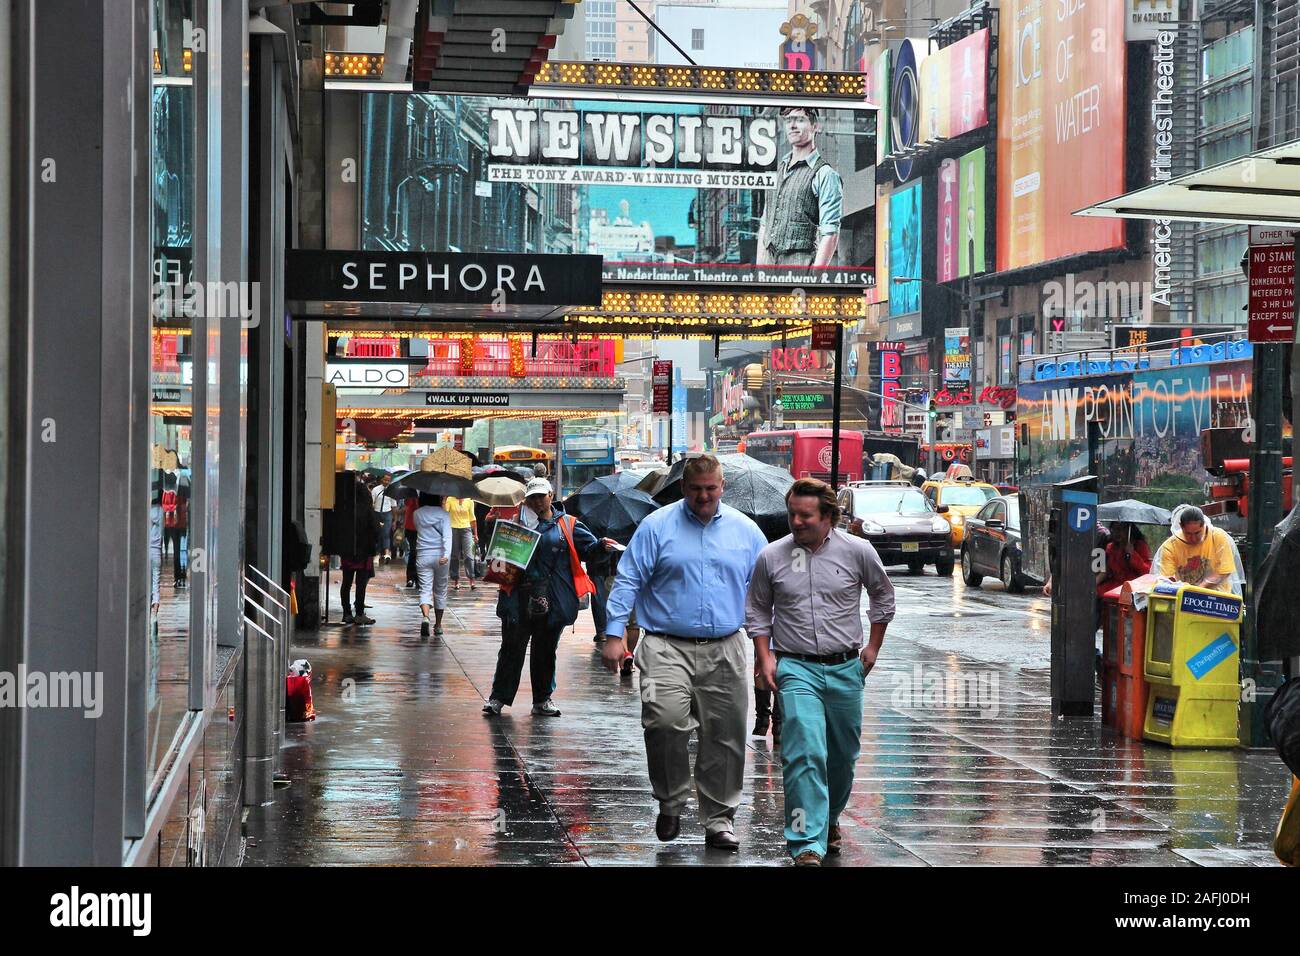 NEW YORK, USA - 10. JUNI 2013: die Menschen entlang der West 42nd Street in New York. Fast 19 Millionen Menschen leben in New York City metropolitan area. Stockfoto